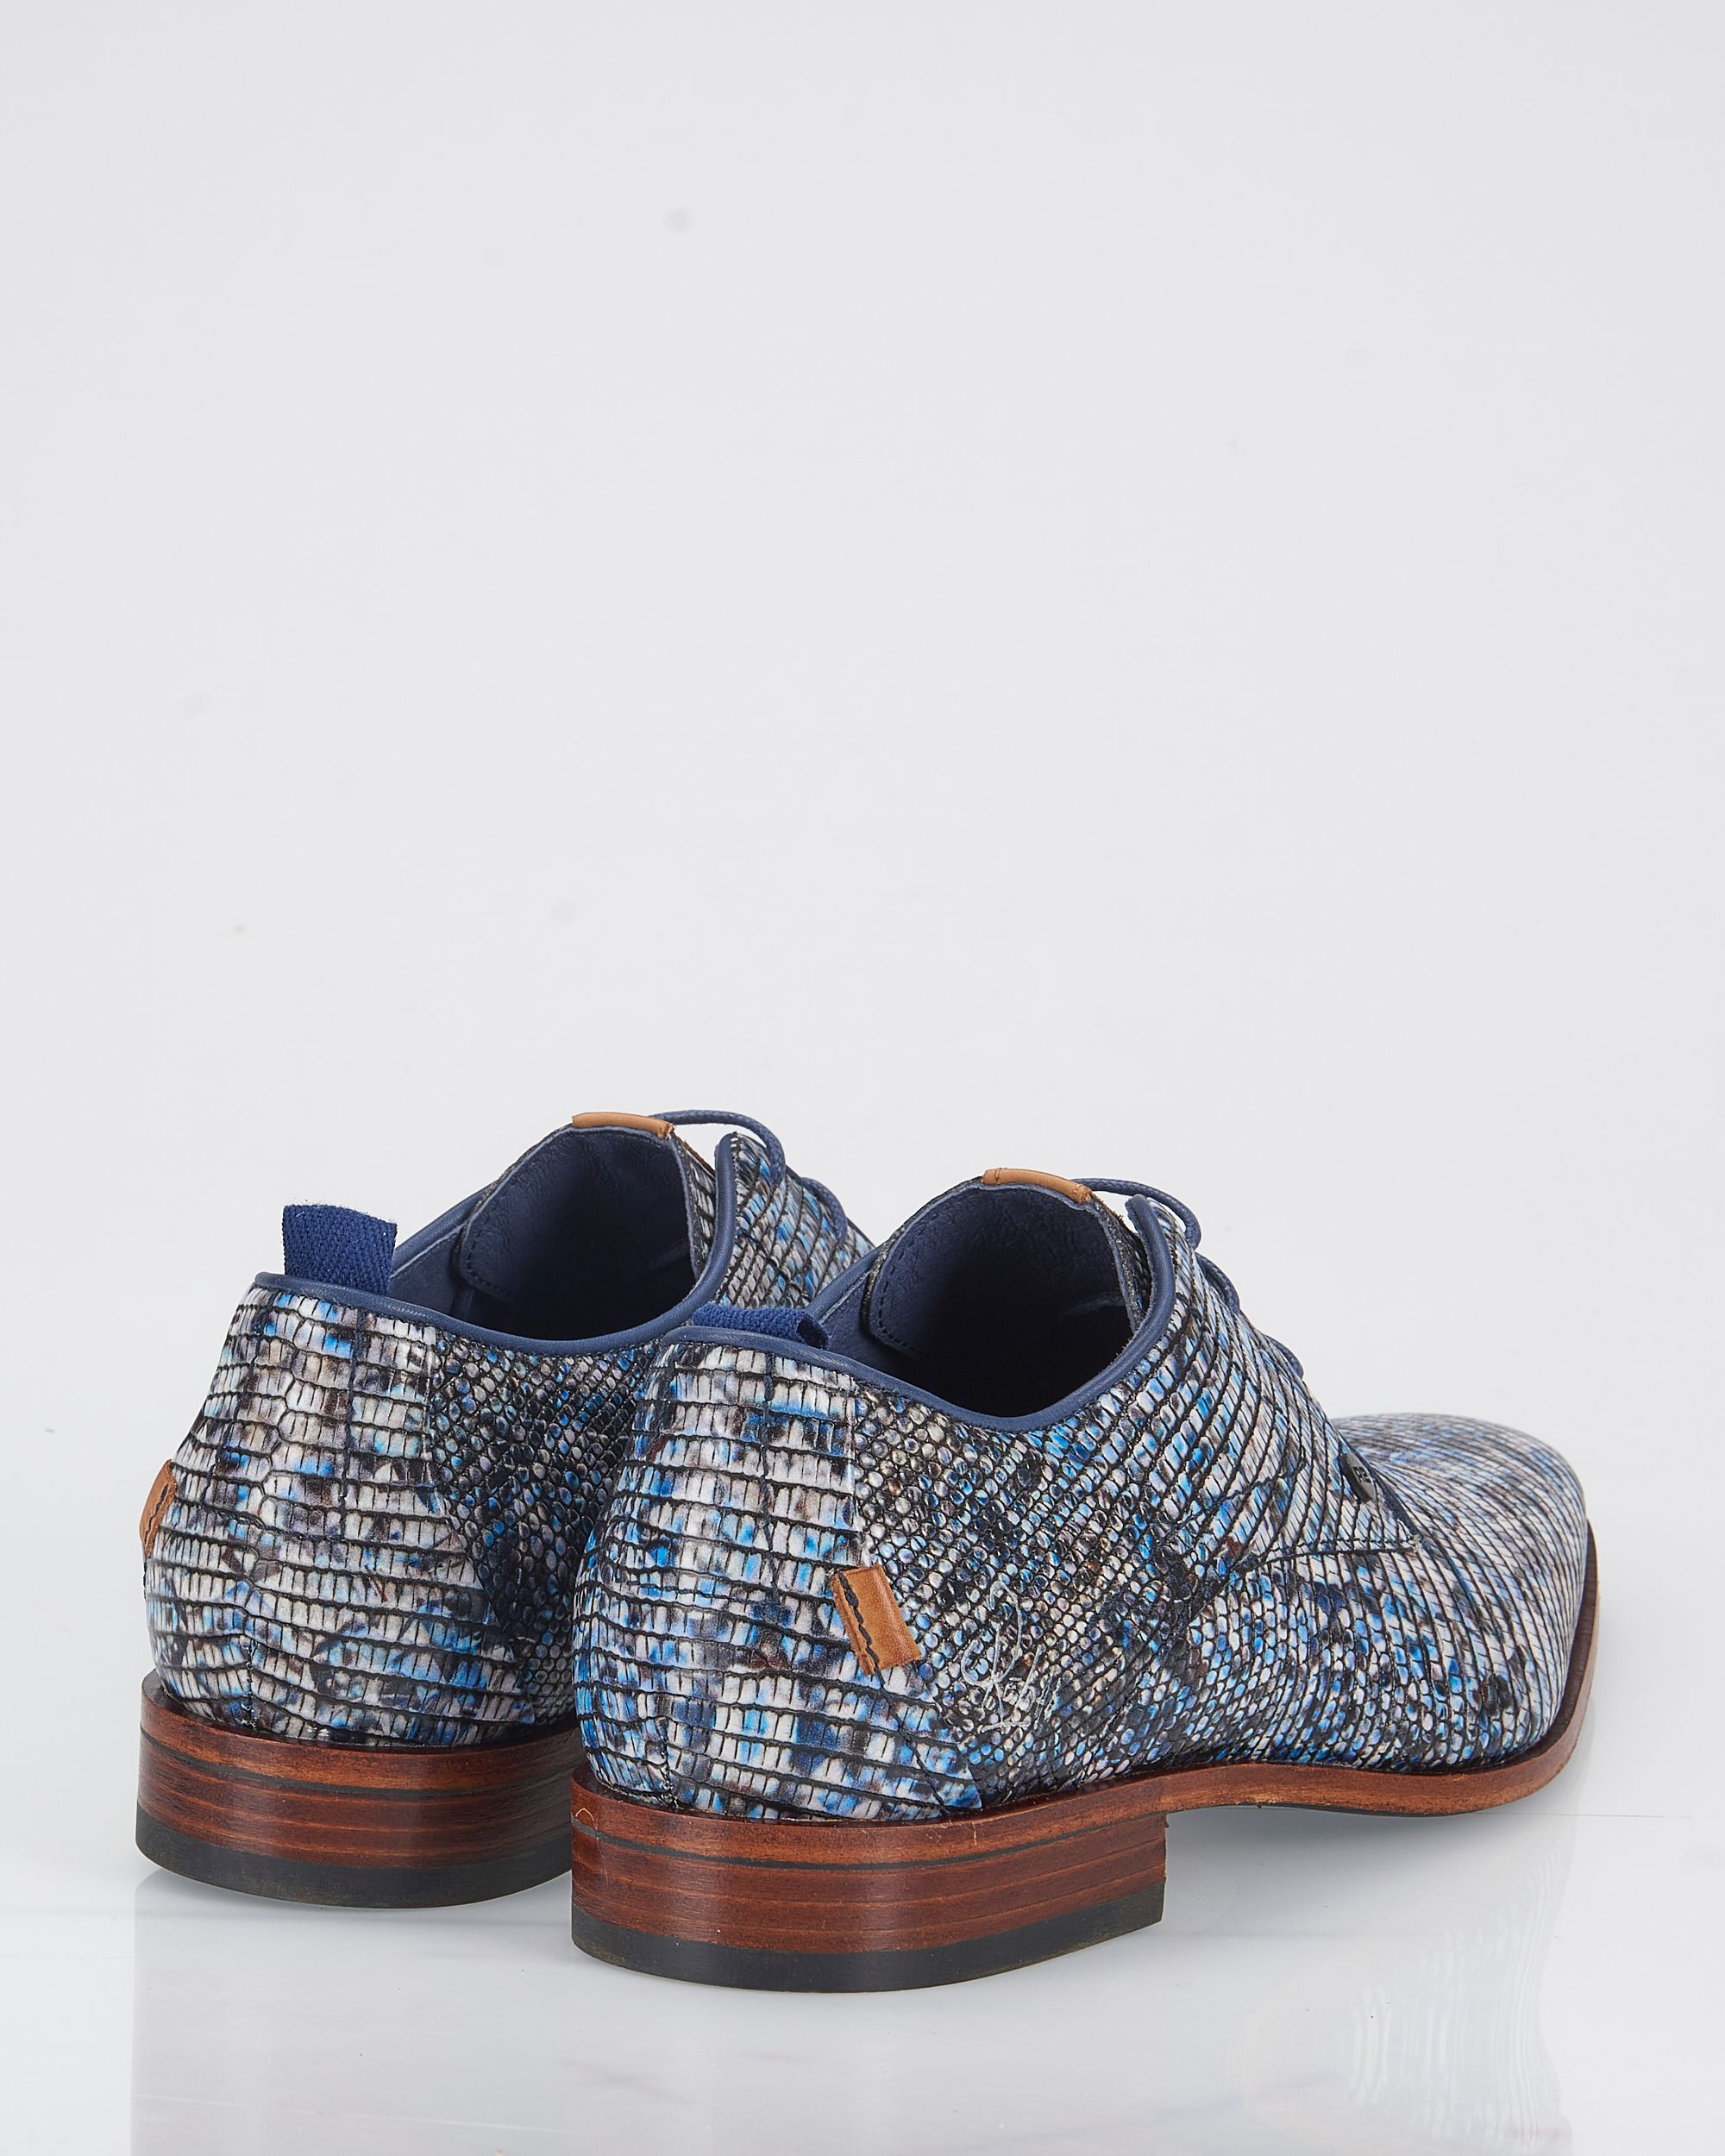 REHAB Geklede schoenen Blauw 084213-001-41